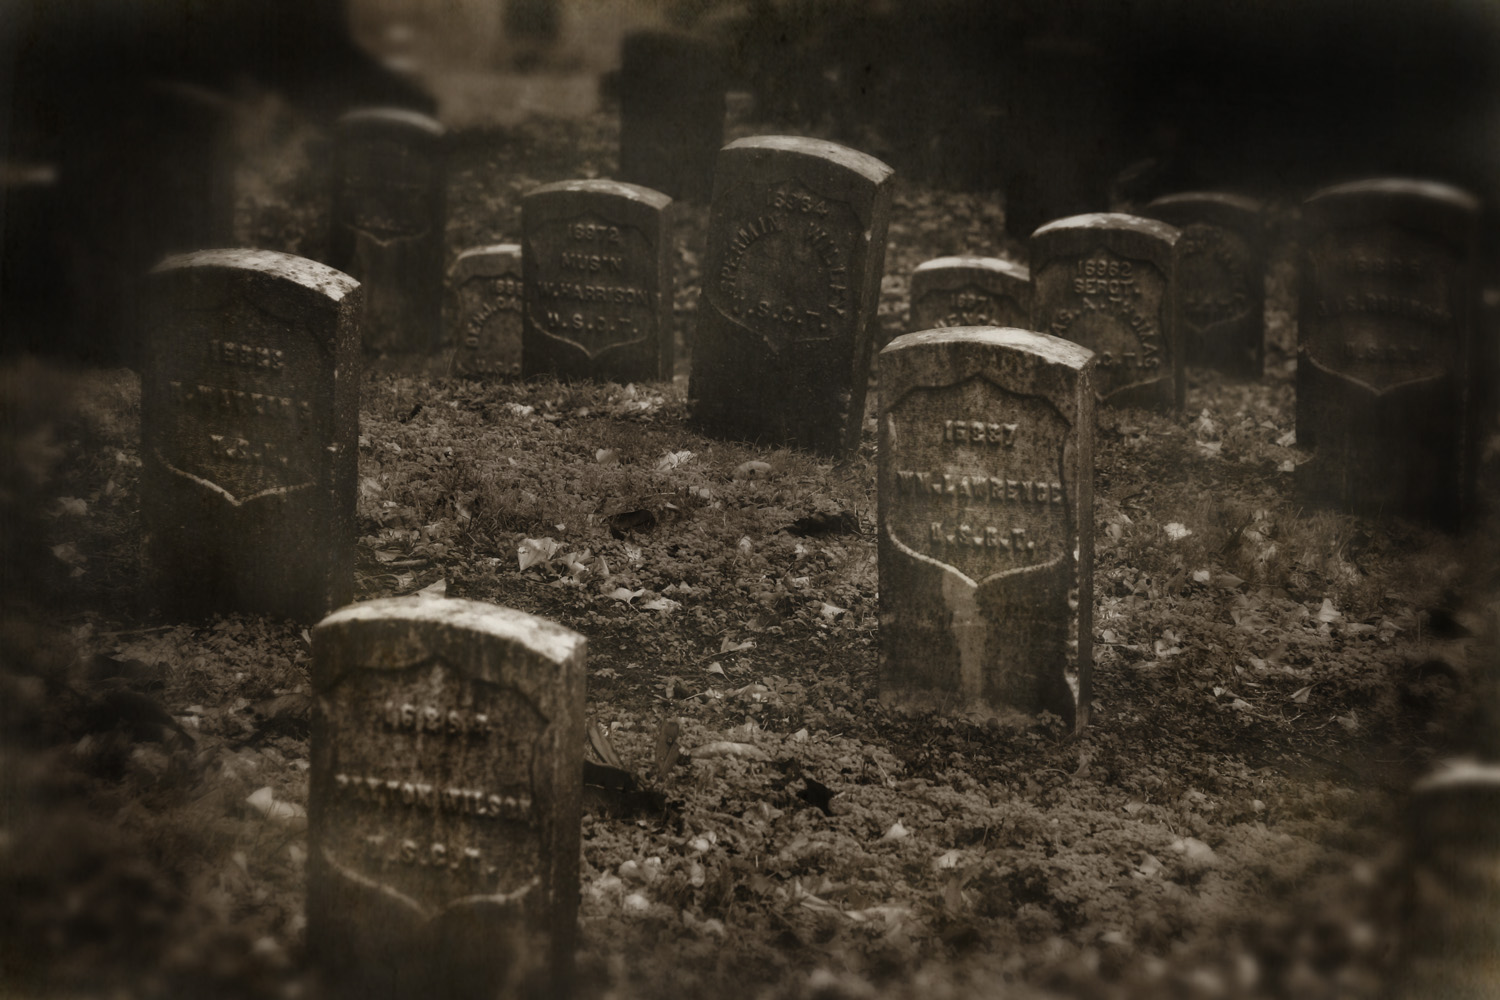 the graveyards at Vicksburg National Military Park